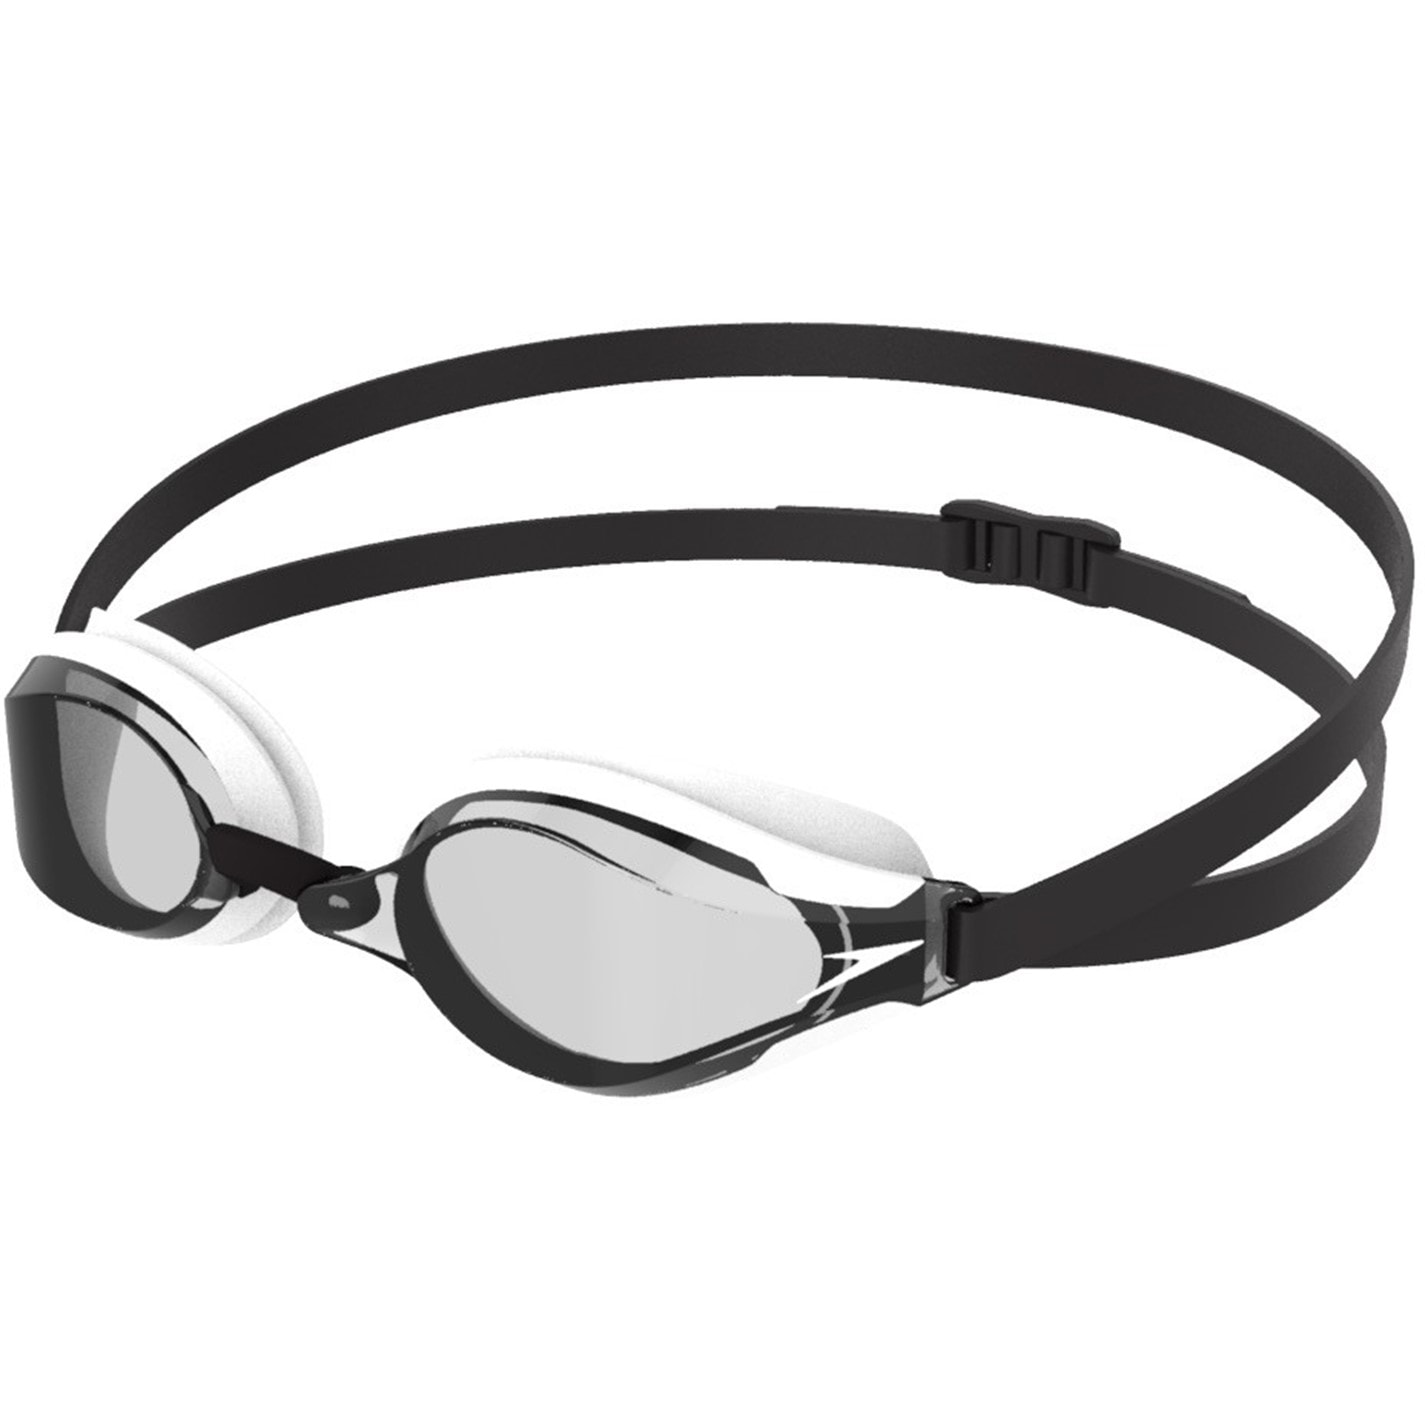 Speedo Fastskin Speedsocket 2 Goggles negru alb